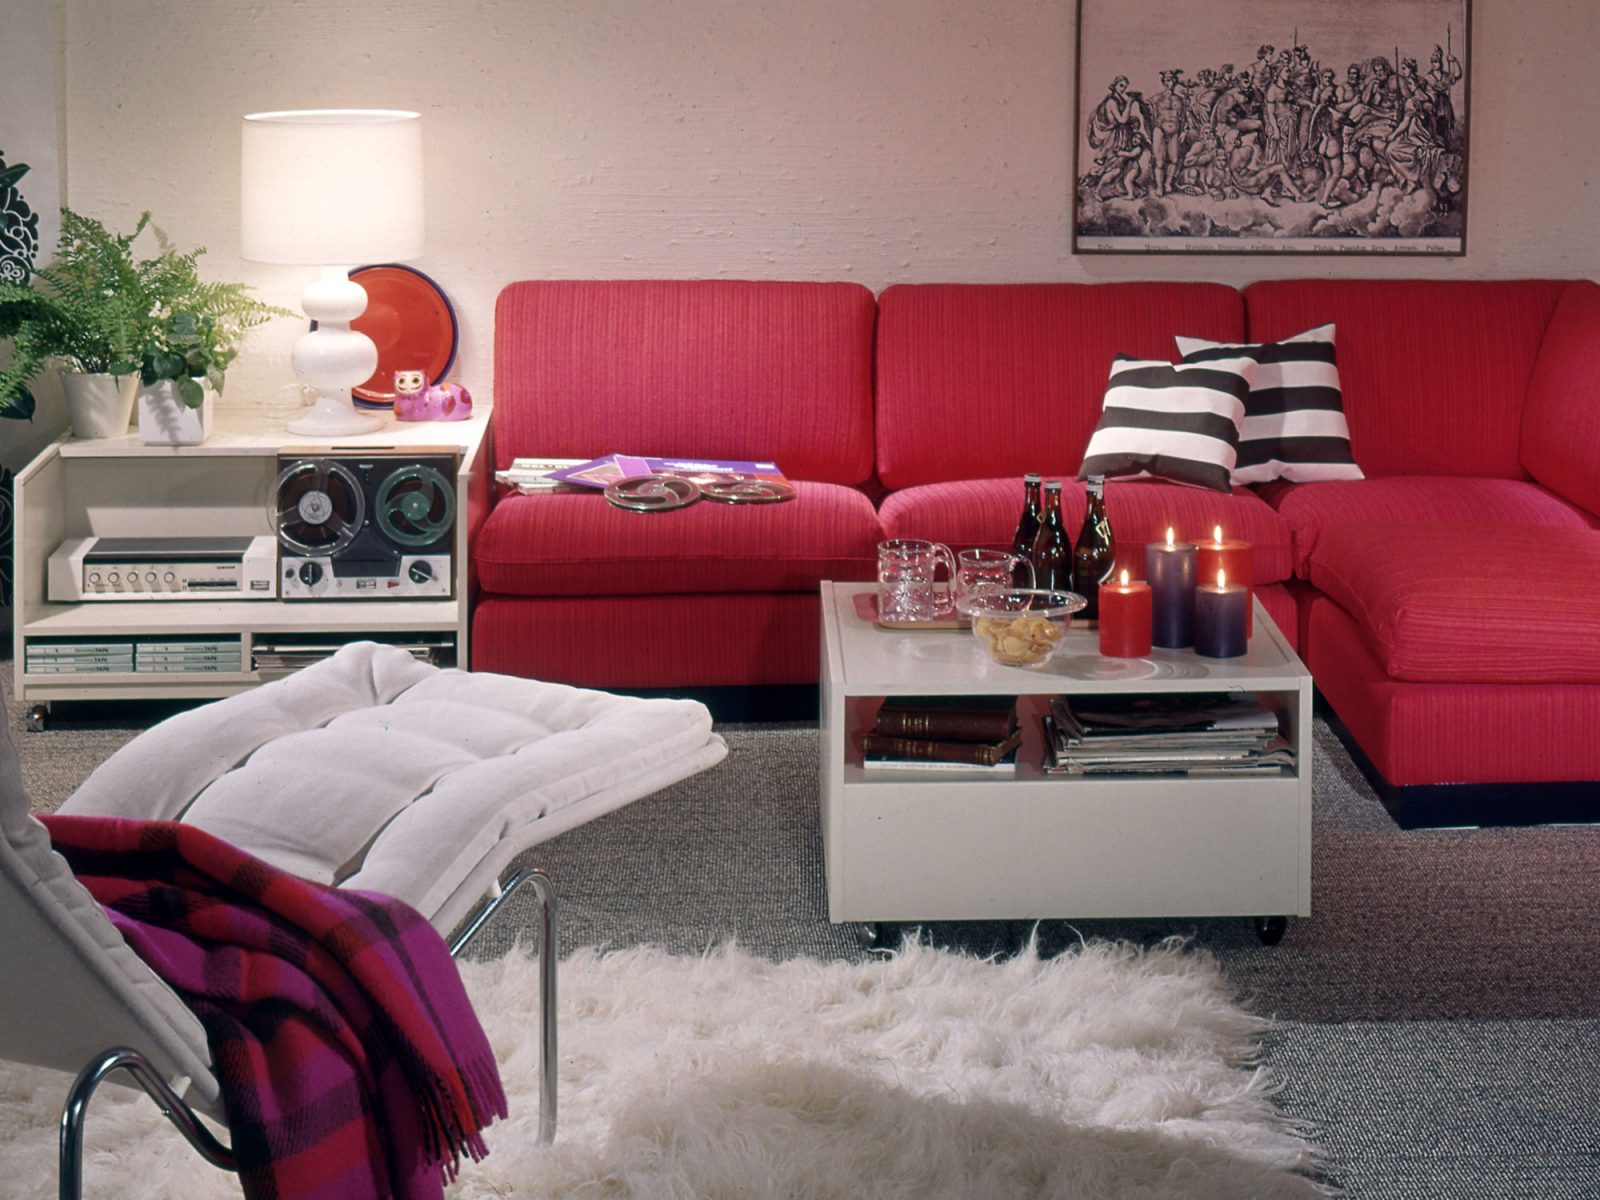 Interiör från IKEA katalog 1970, röd soffa ZOOM, vit matta och vilfåtölj KRÖKEN samt stereoanläggning i bakgrunden.